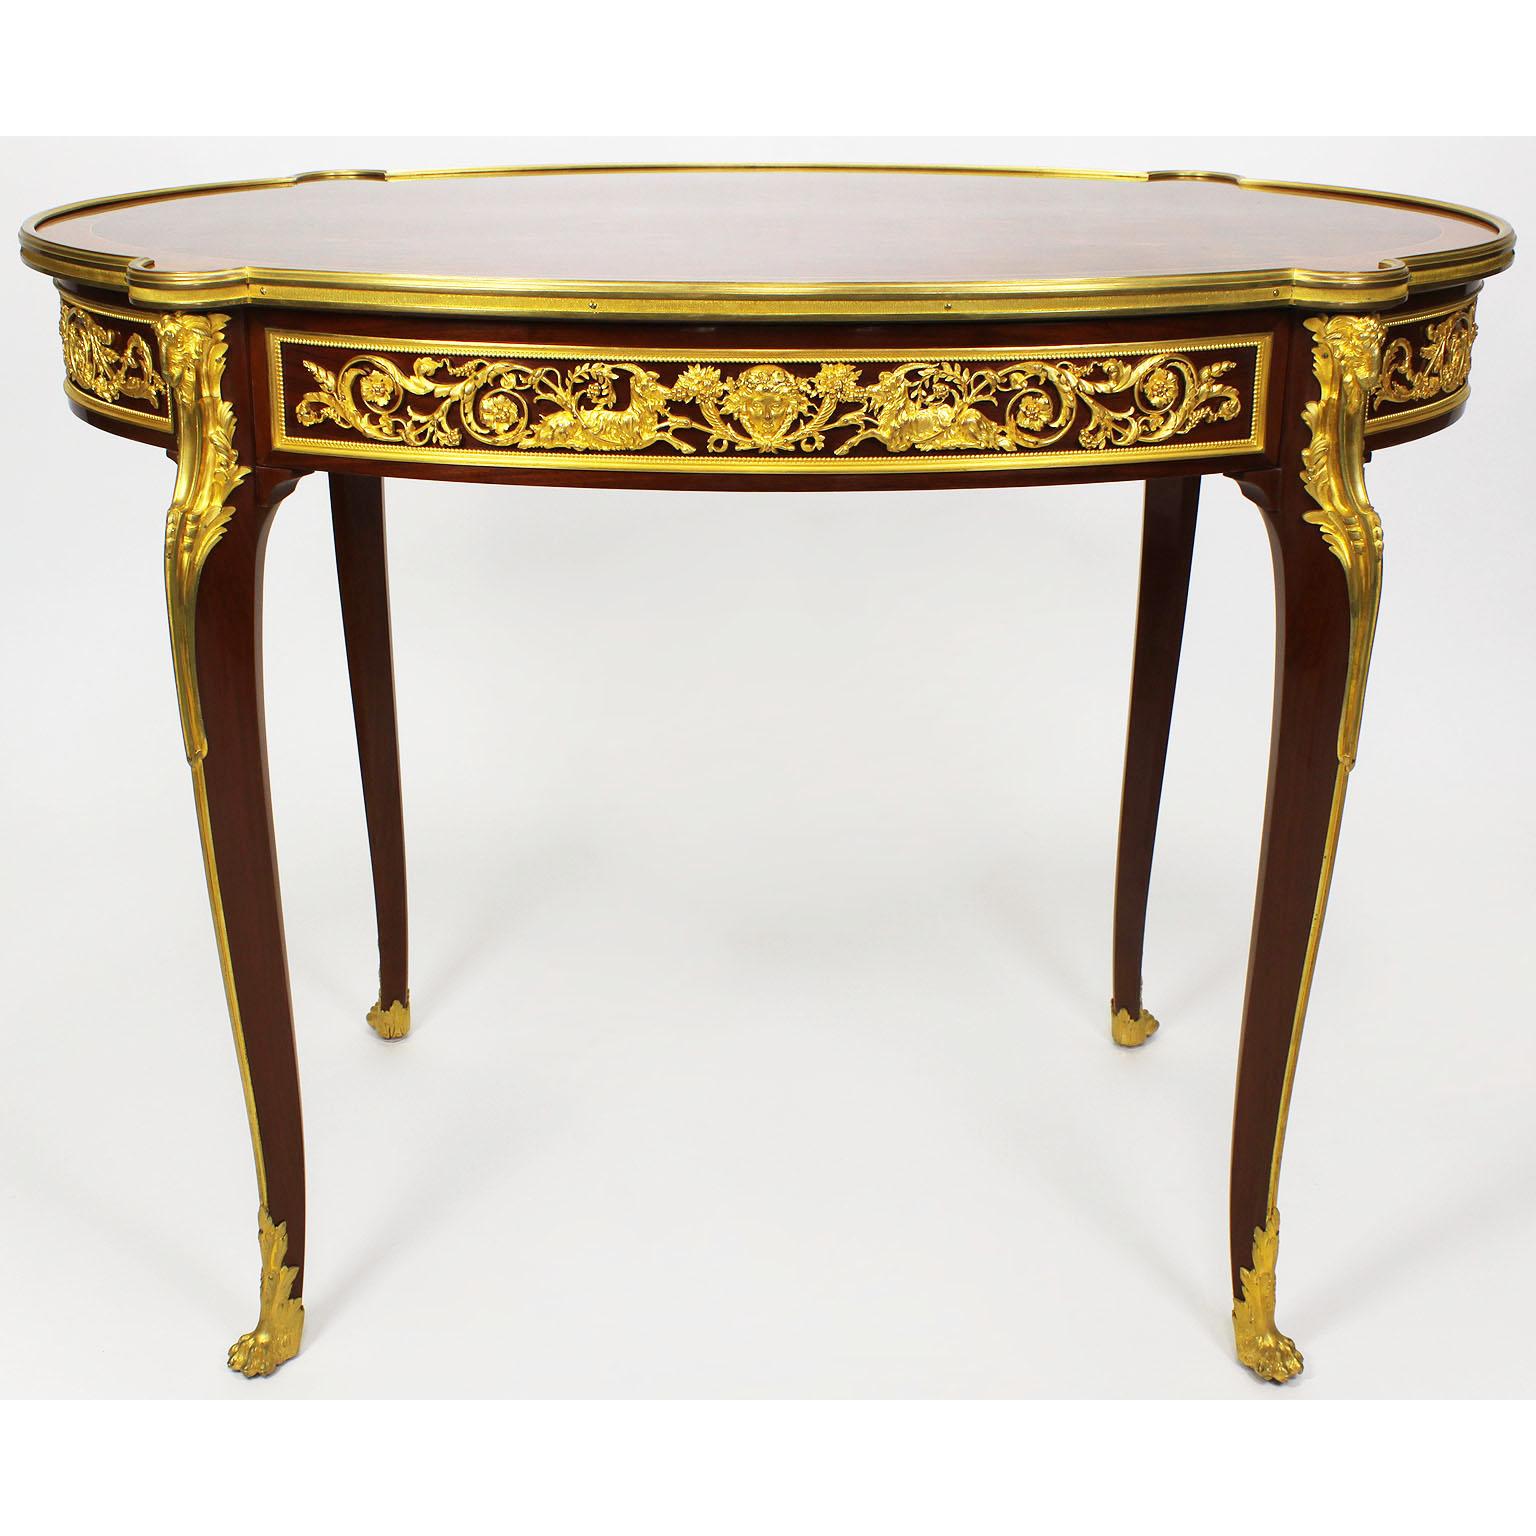 Très belle table centrale ovale de style Louis XV du 19e/20e siècle en acajou, noyer et placage de satiné, montée sur bronze doré et dotée d'un tiroir en frise, attribuée à Franc¸ois Linke (1855-1946). Le plateau est orné d'un motif de parquet en